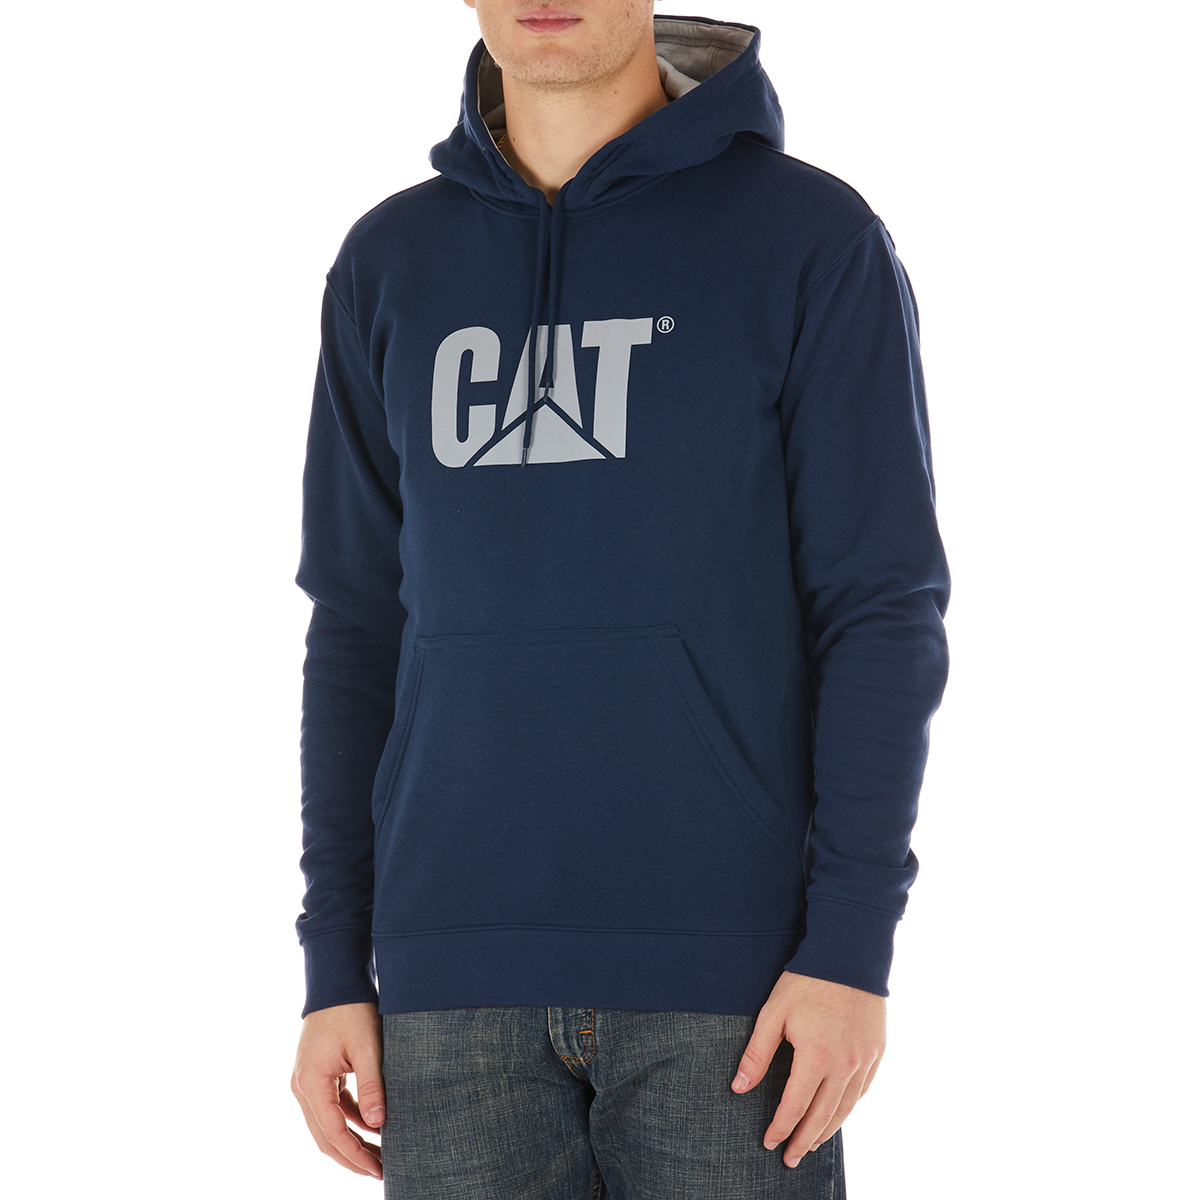 CAT Men's Hooded Sweatshirt